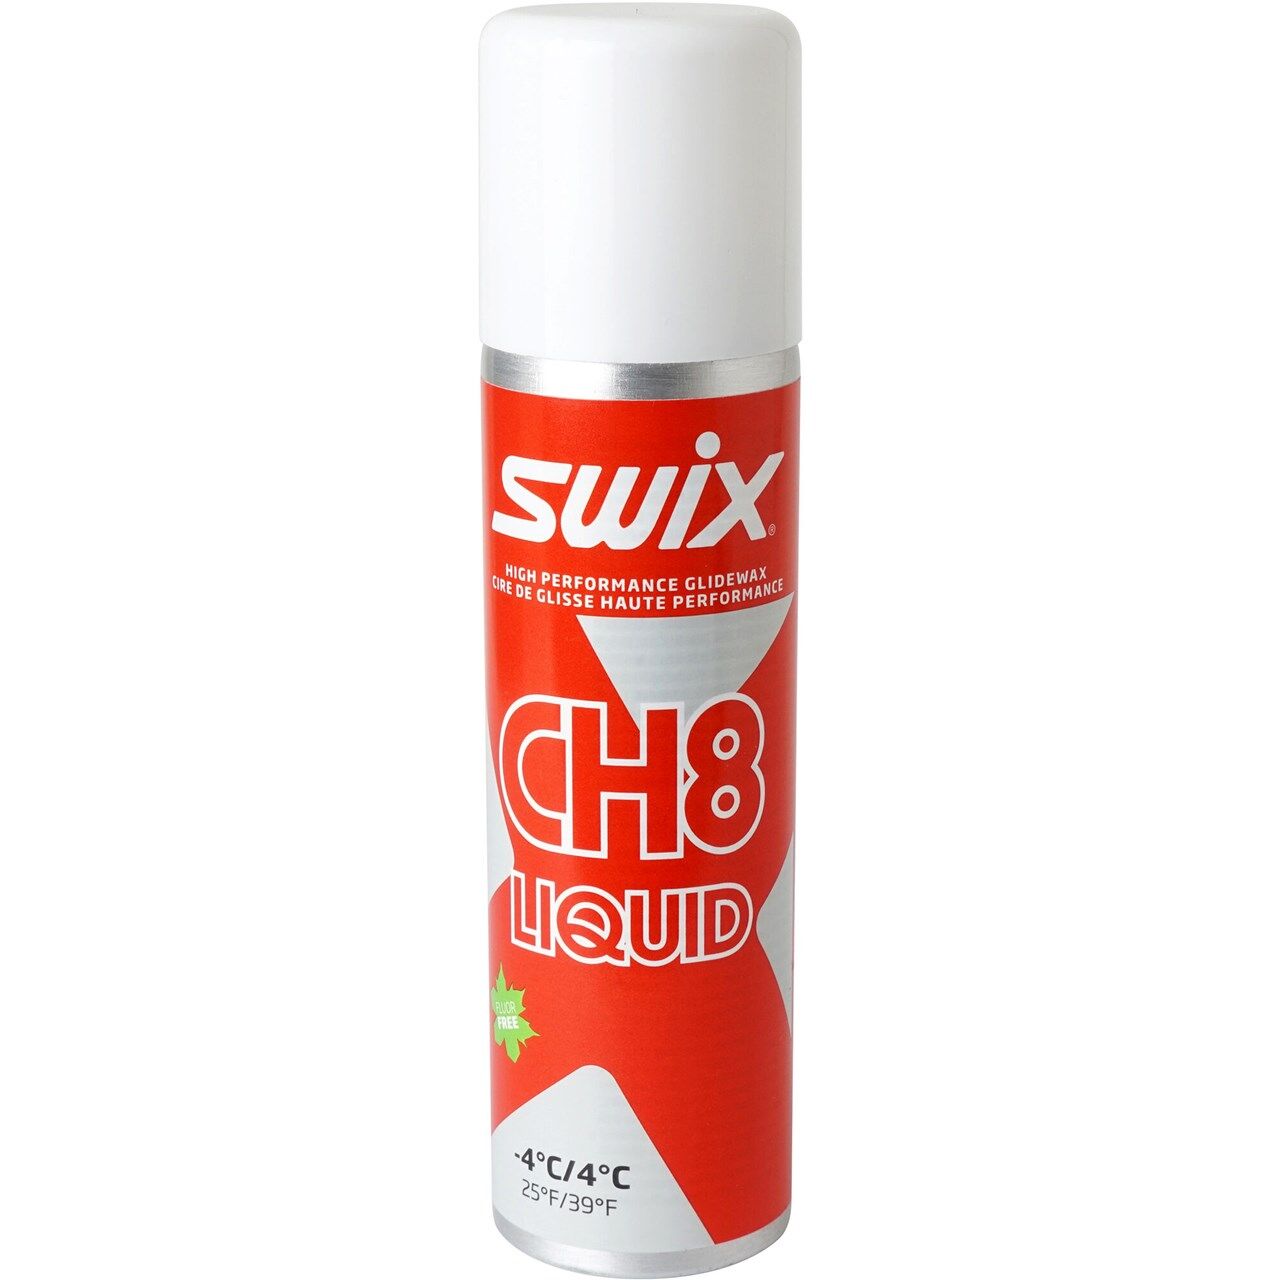 Swix CH08X Liquid -4C/+4C (125ml) - Wax